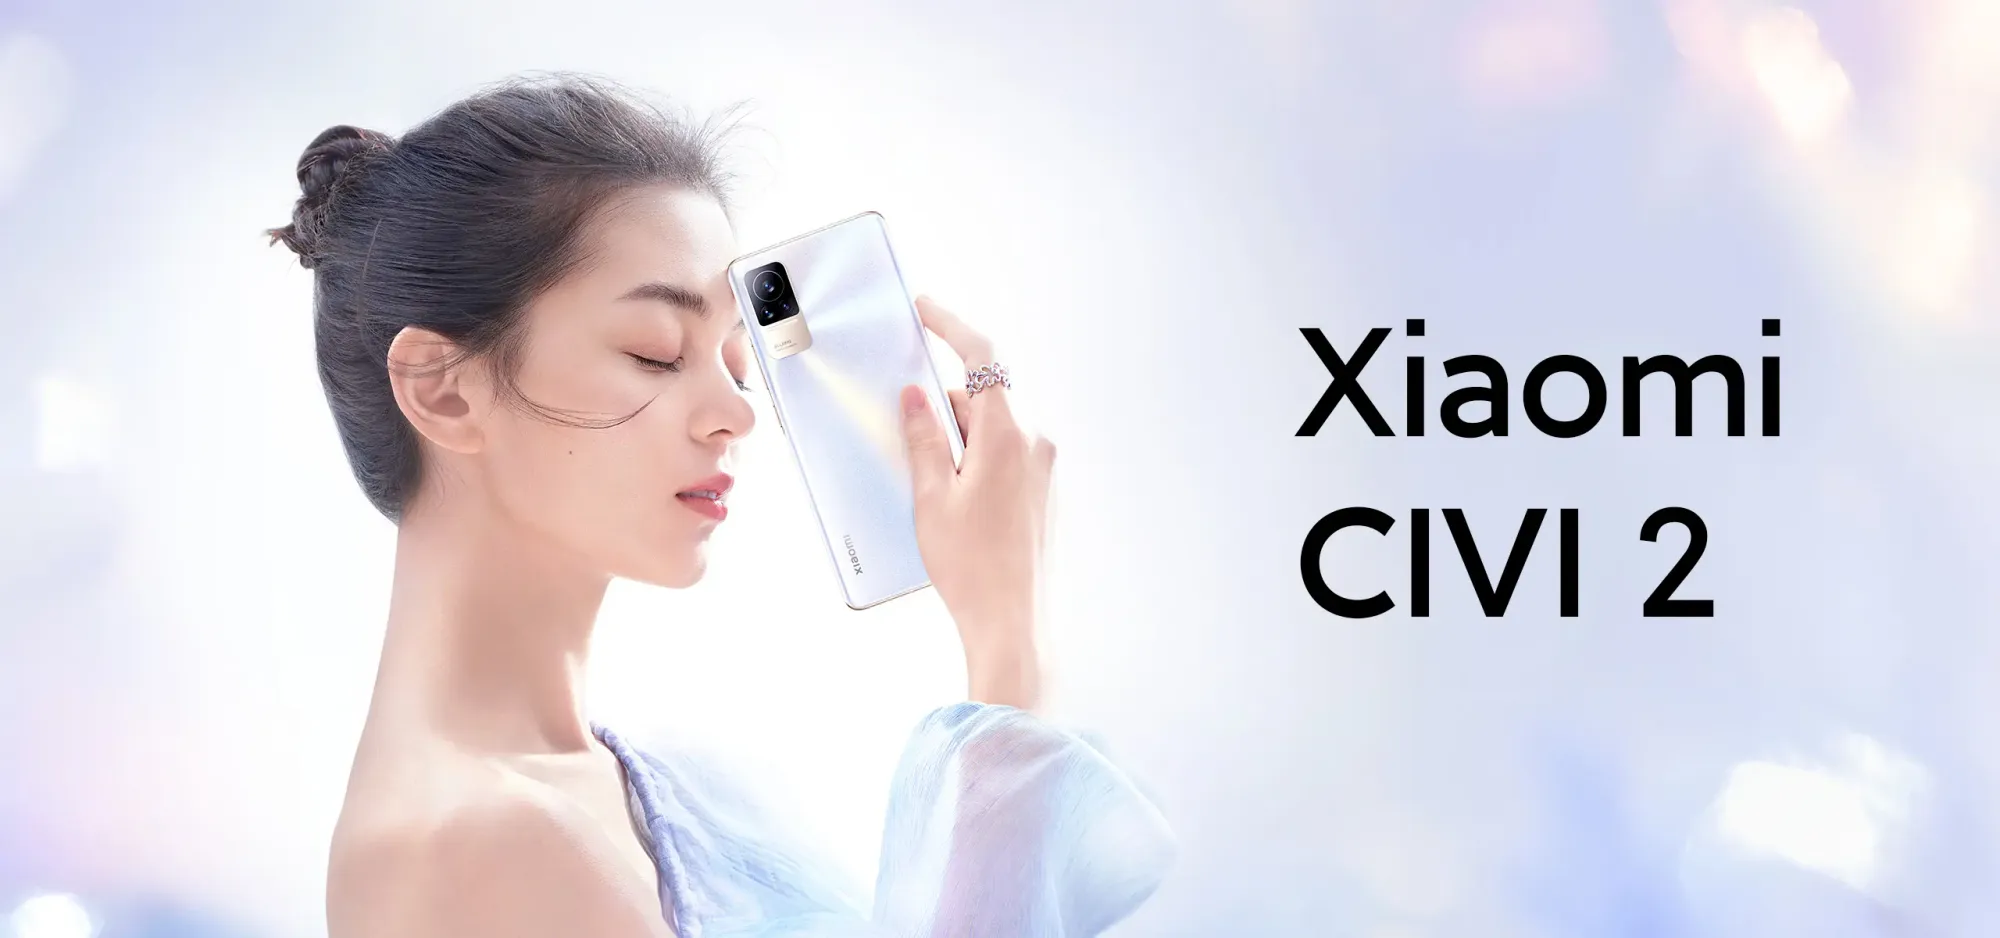 FILTRADO- Así será el Xiaomi Civi 2